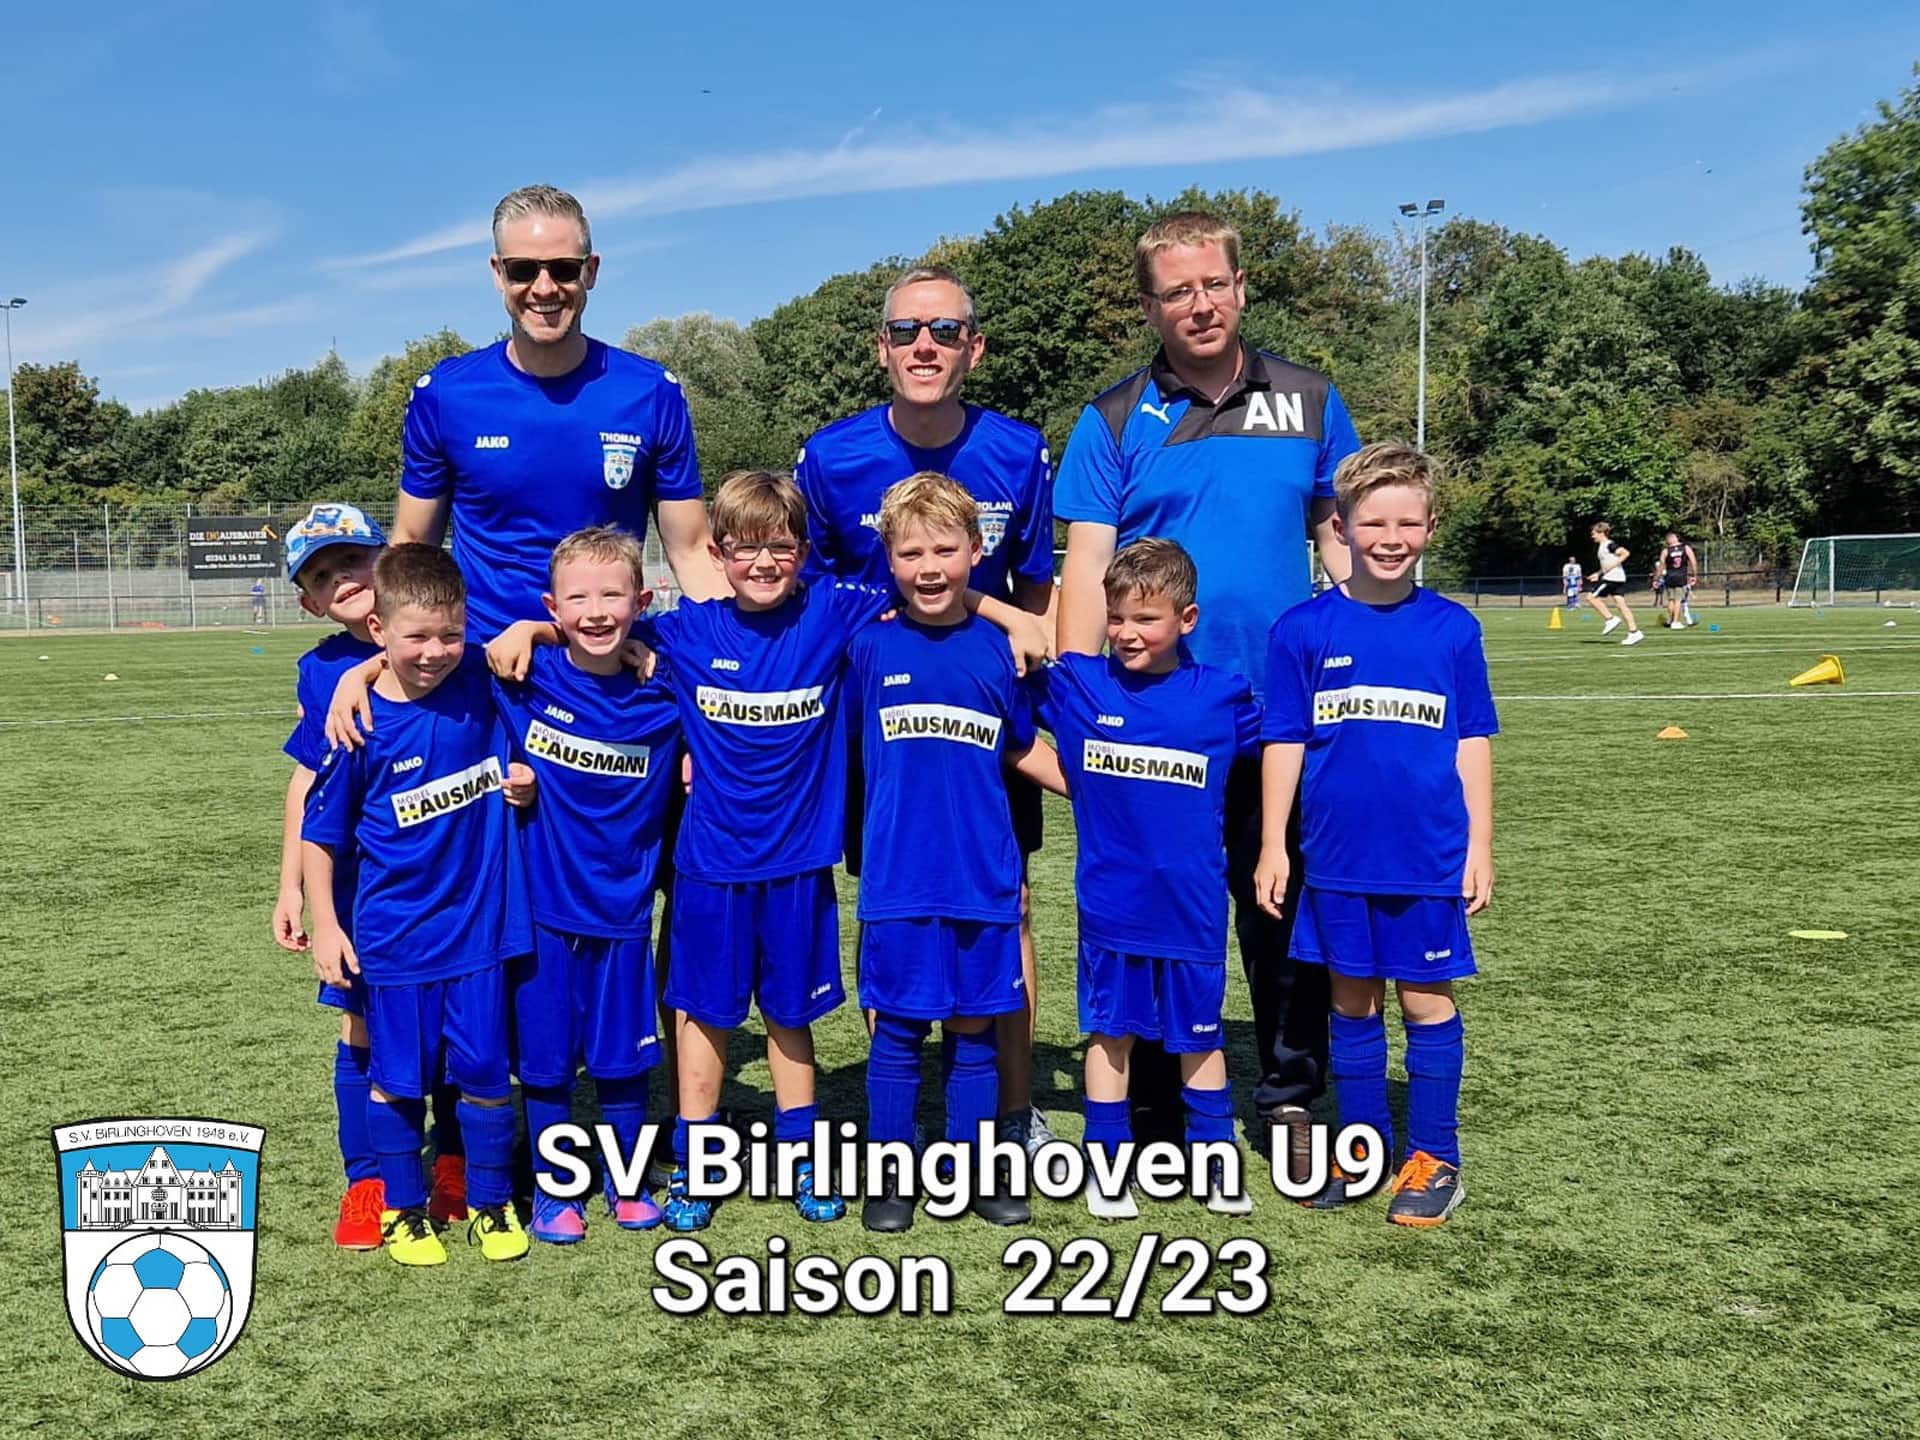 sv-birlinghoven-u9-fussballverein-sportverein-sankt-augustin-juniorion-u9-mannschaft